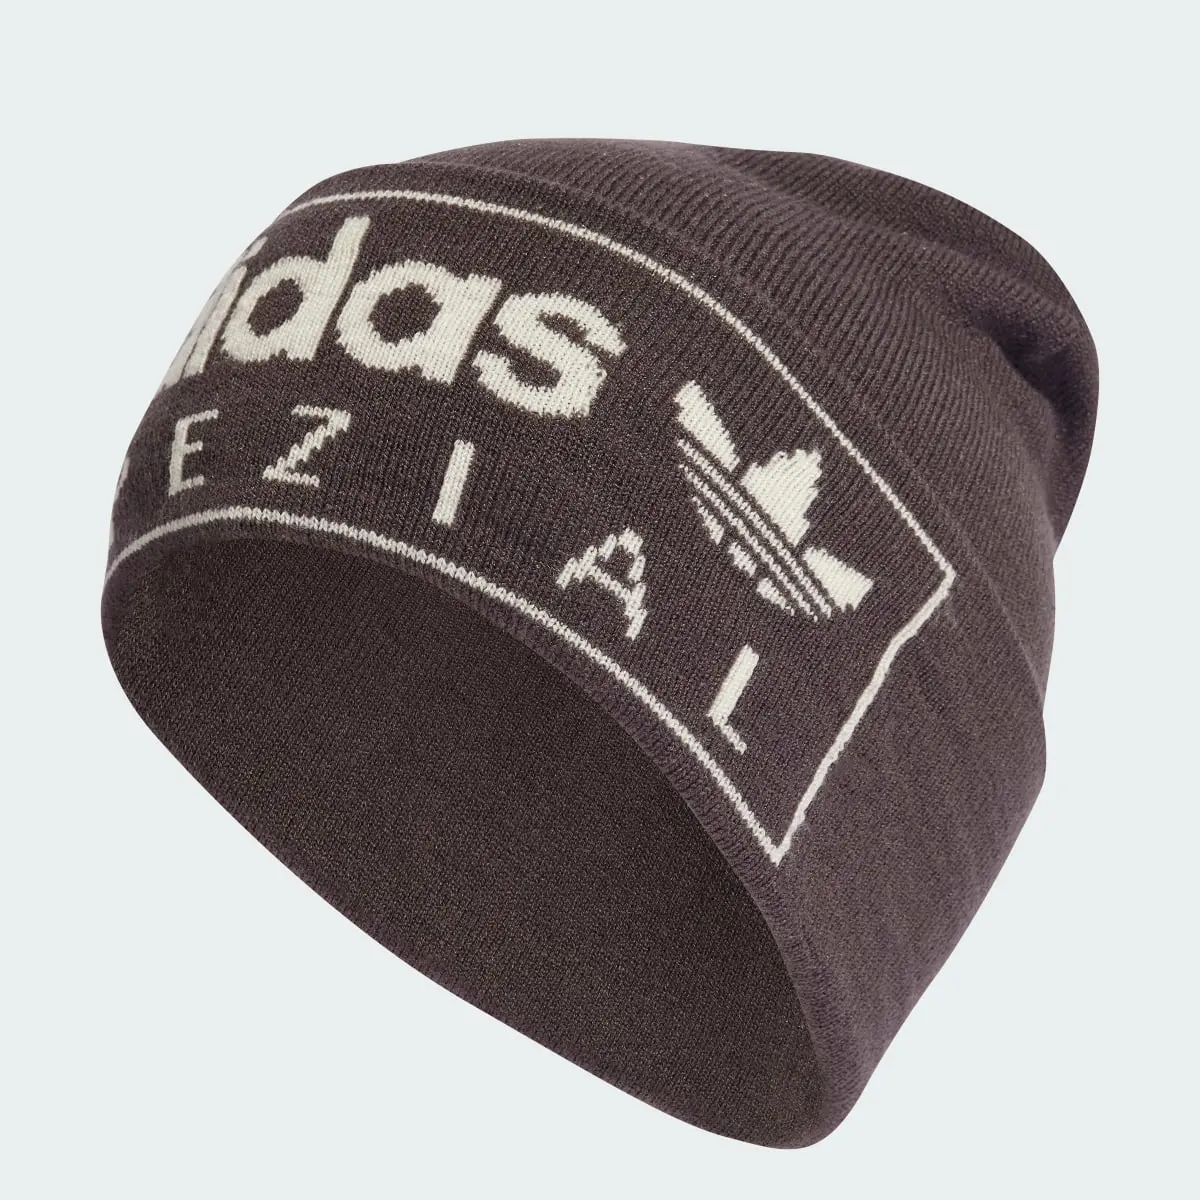 Adidas Spezial Hat. 1